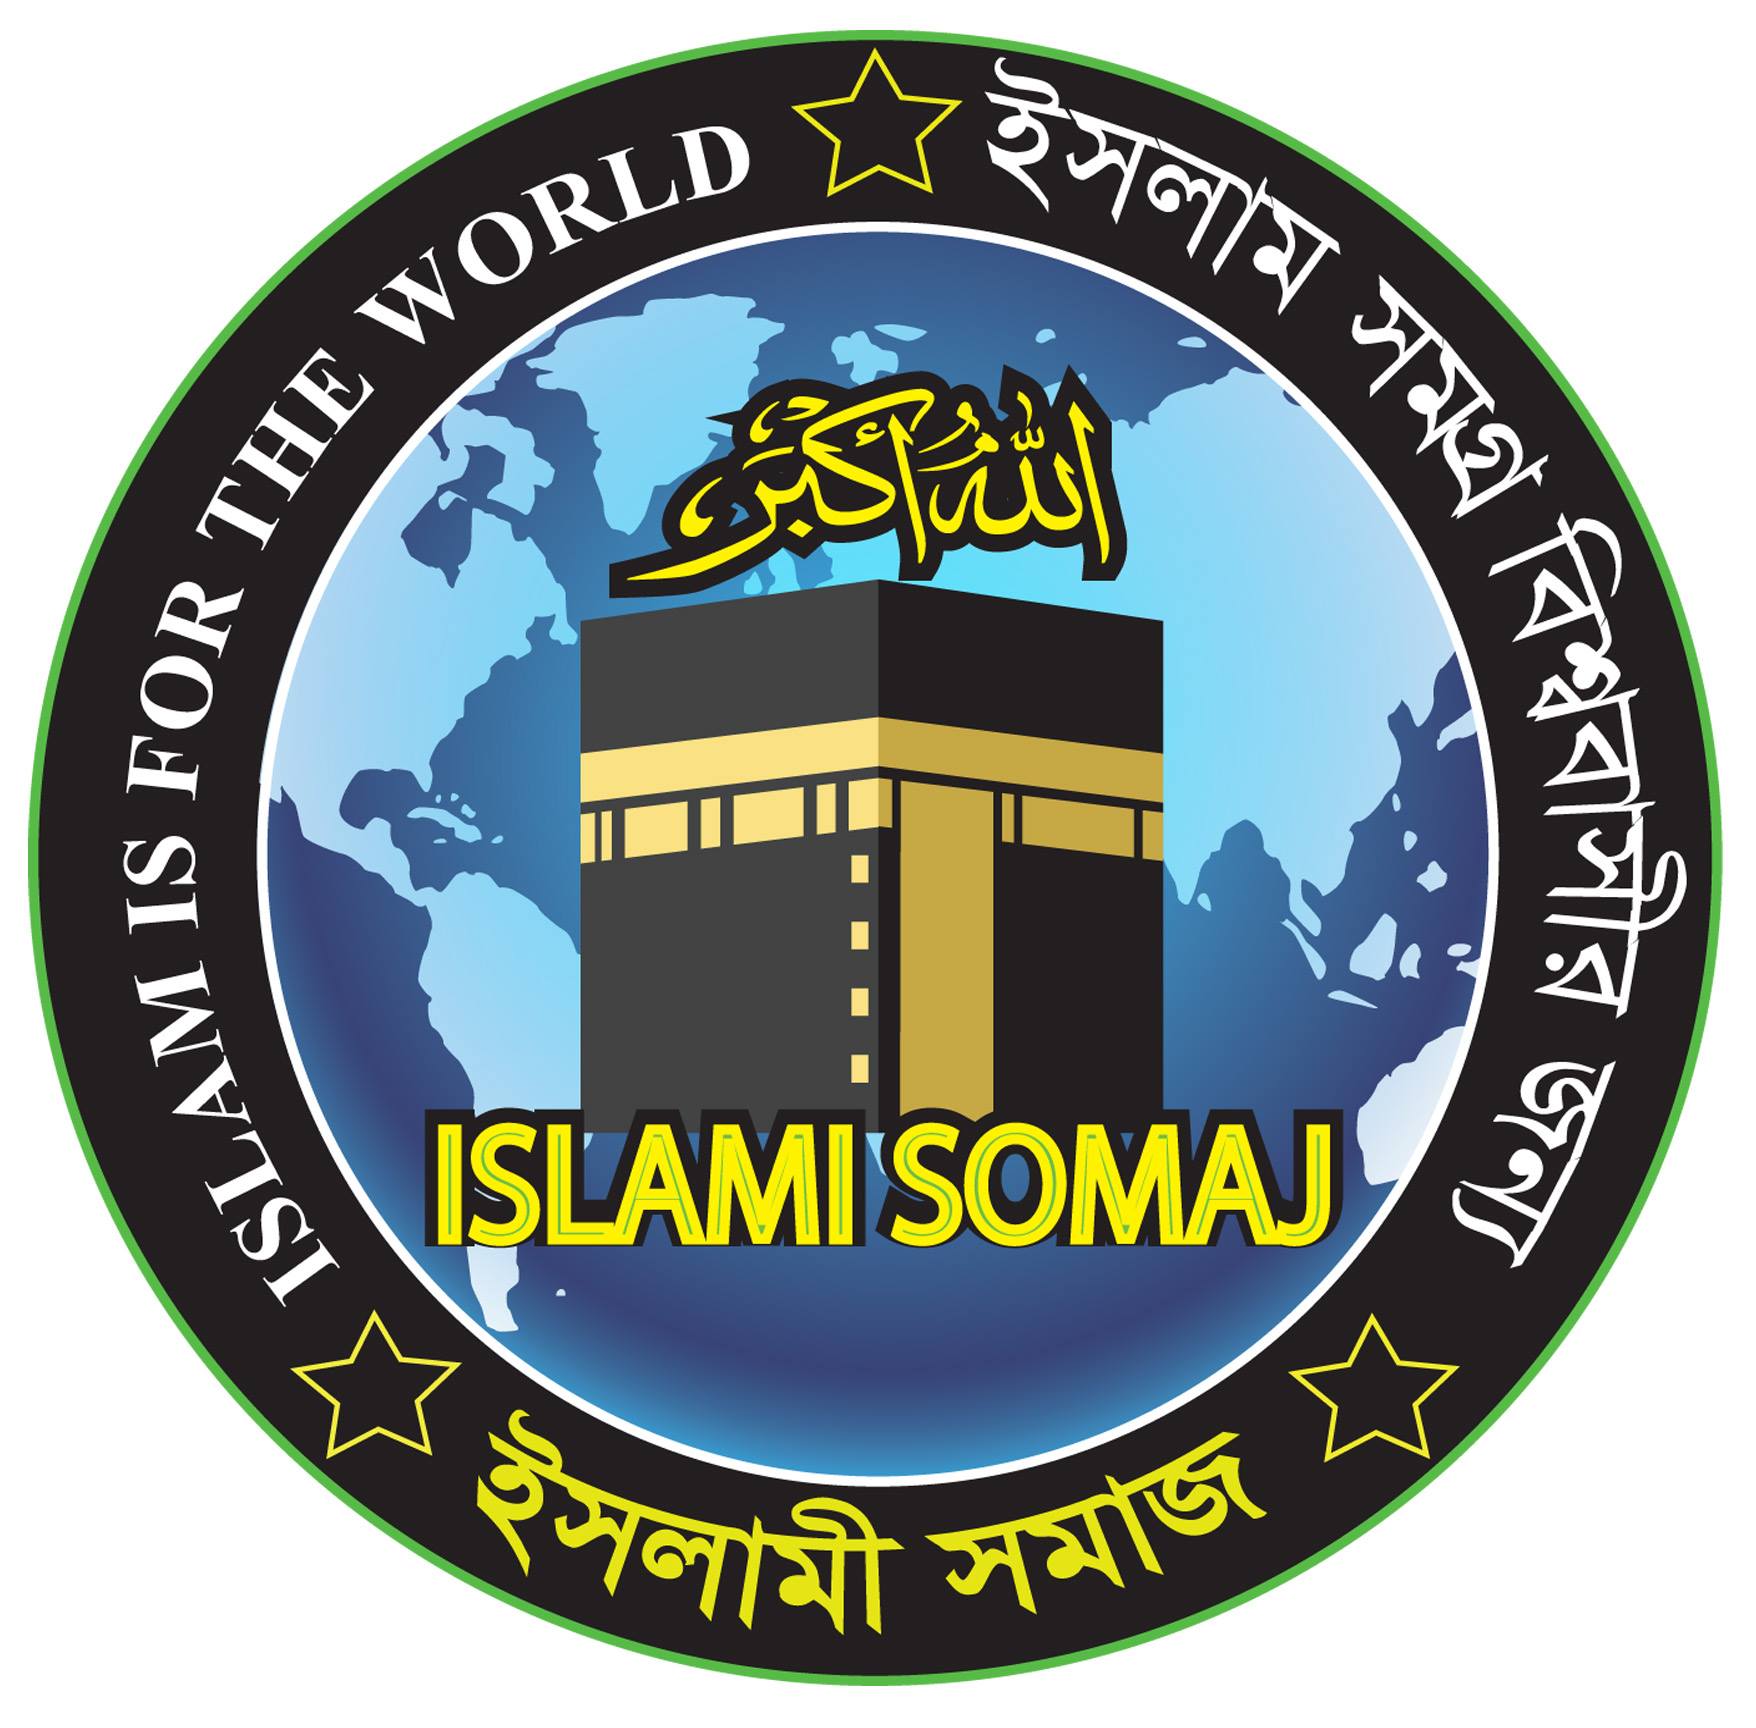 islamisomaj.com,islamisomaj,islami somsj